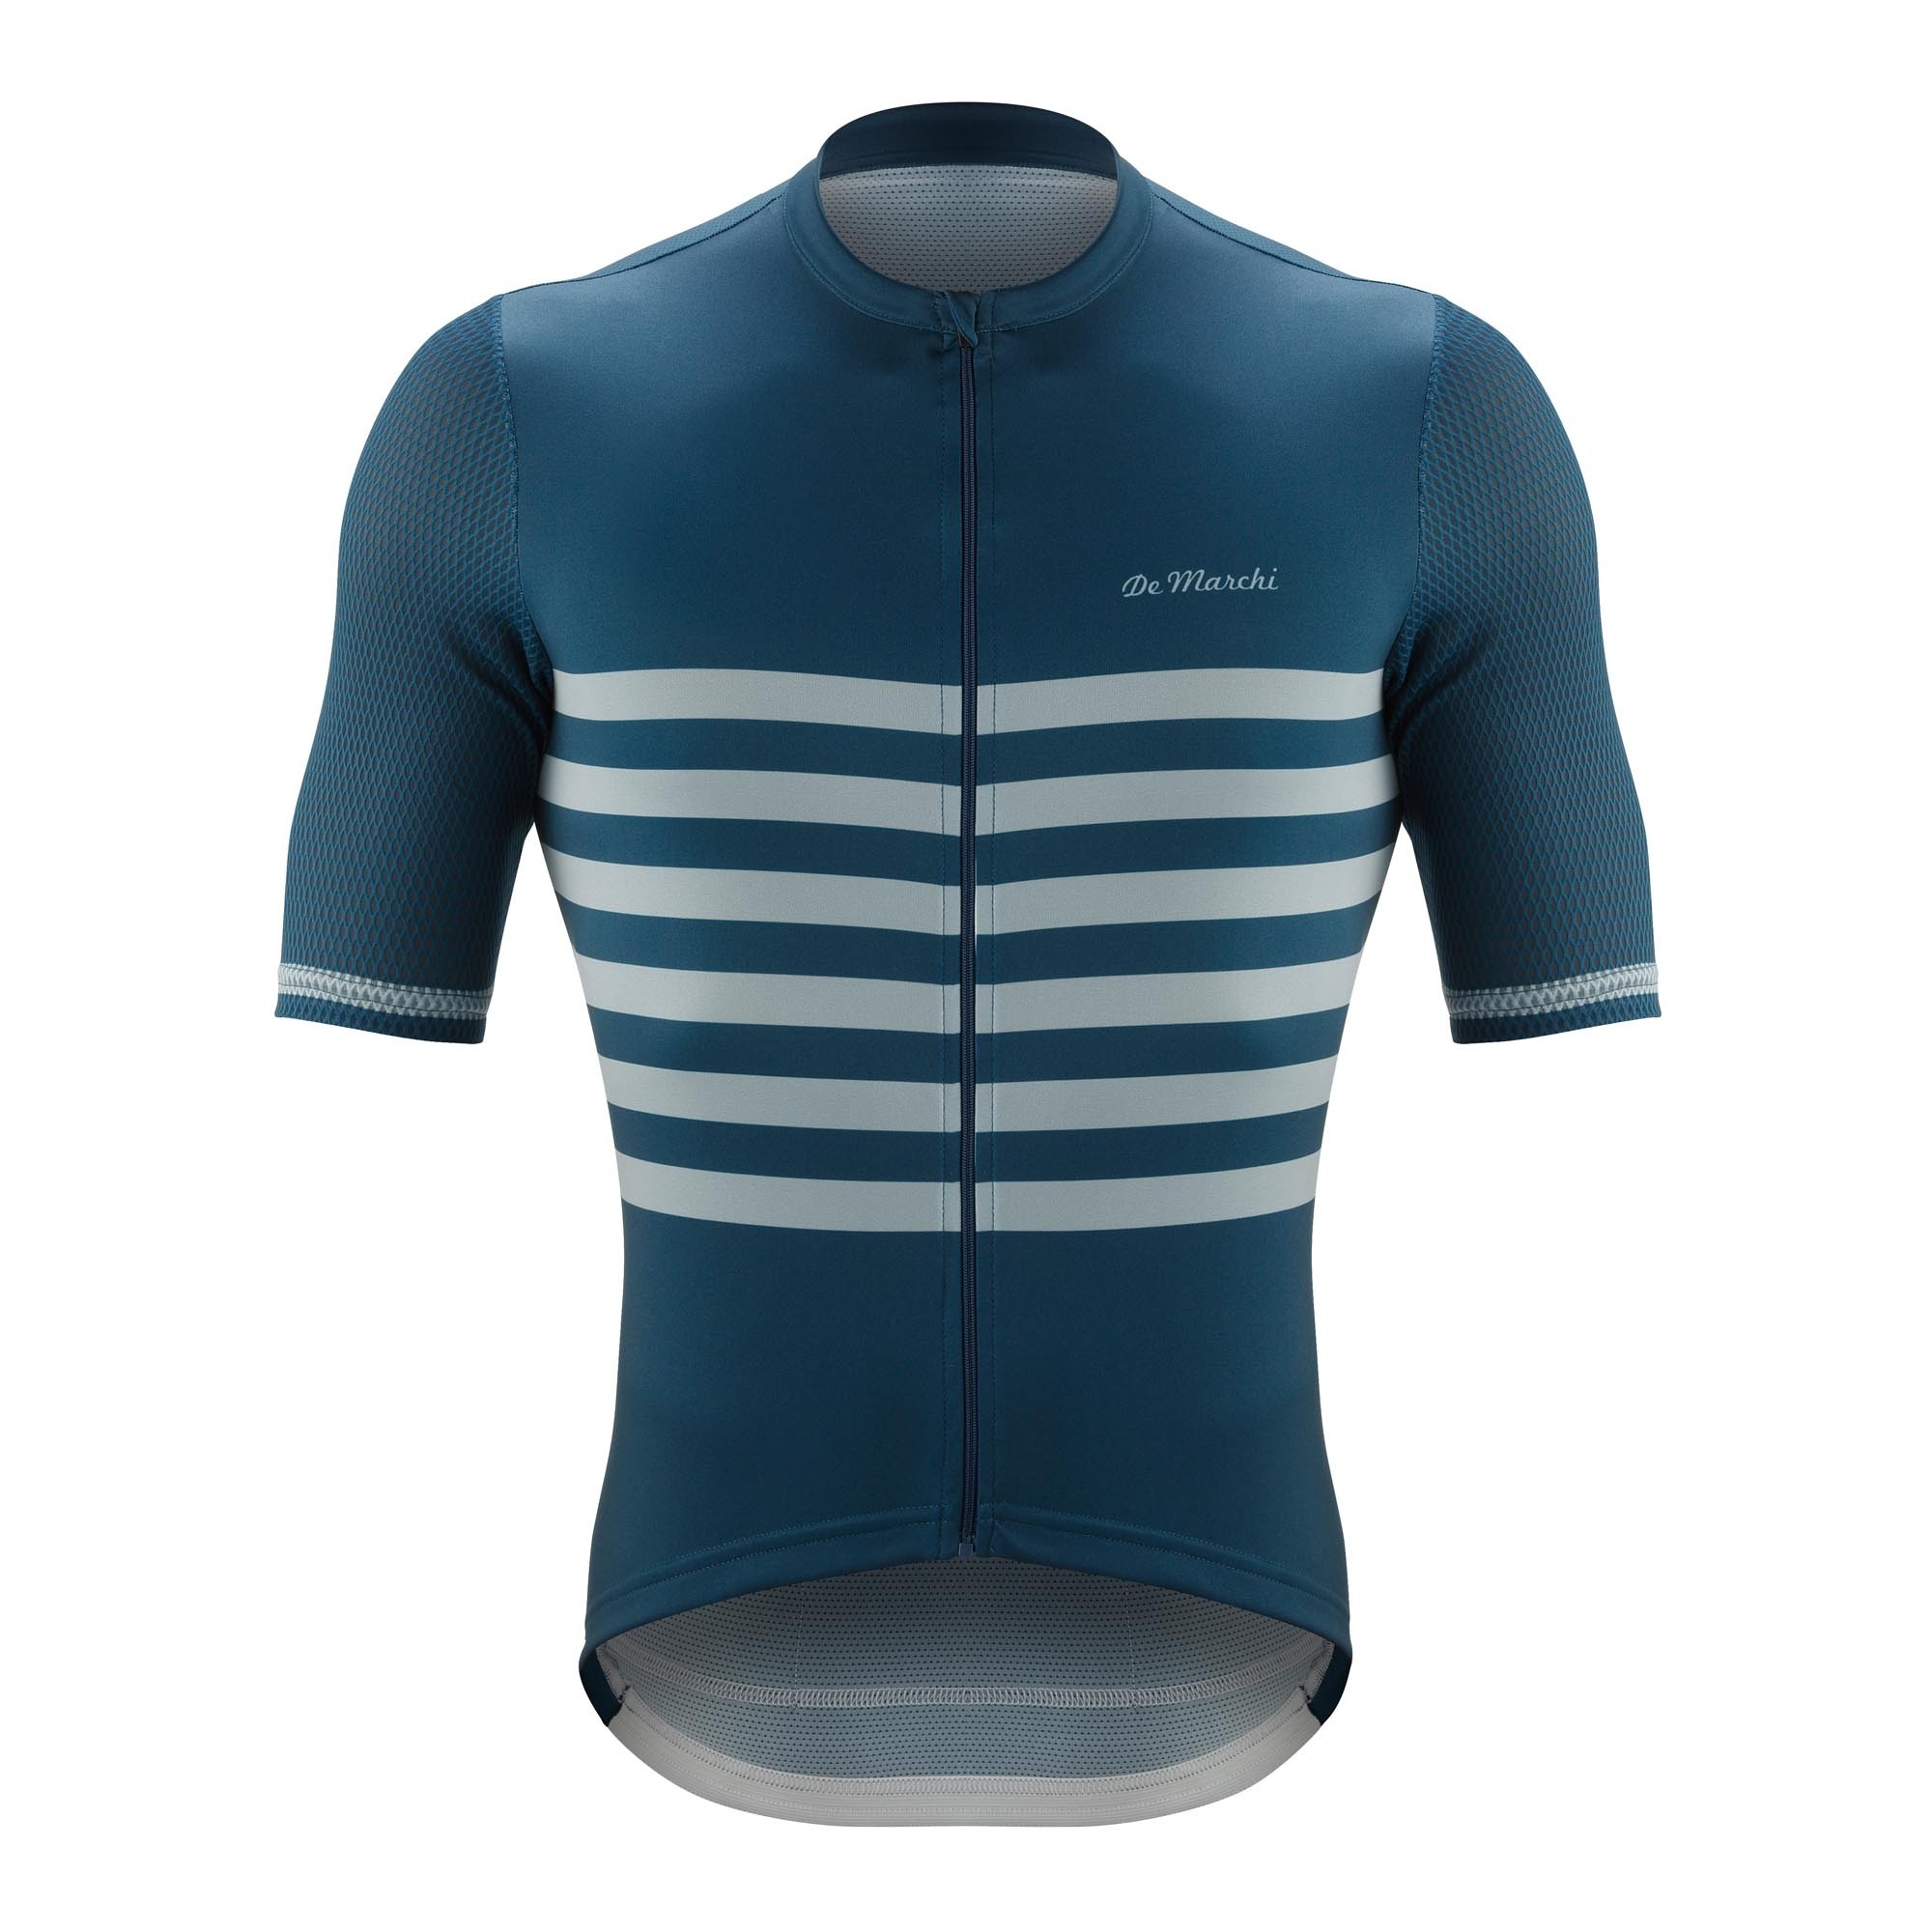 De Marchi veloce fietsshirt met korte mouwen navy blauw